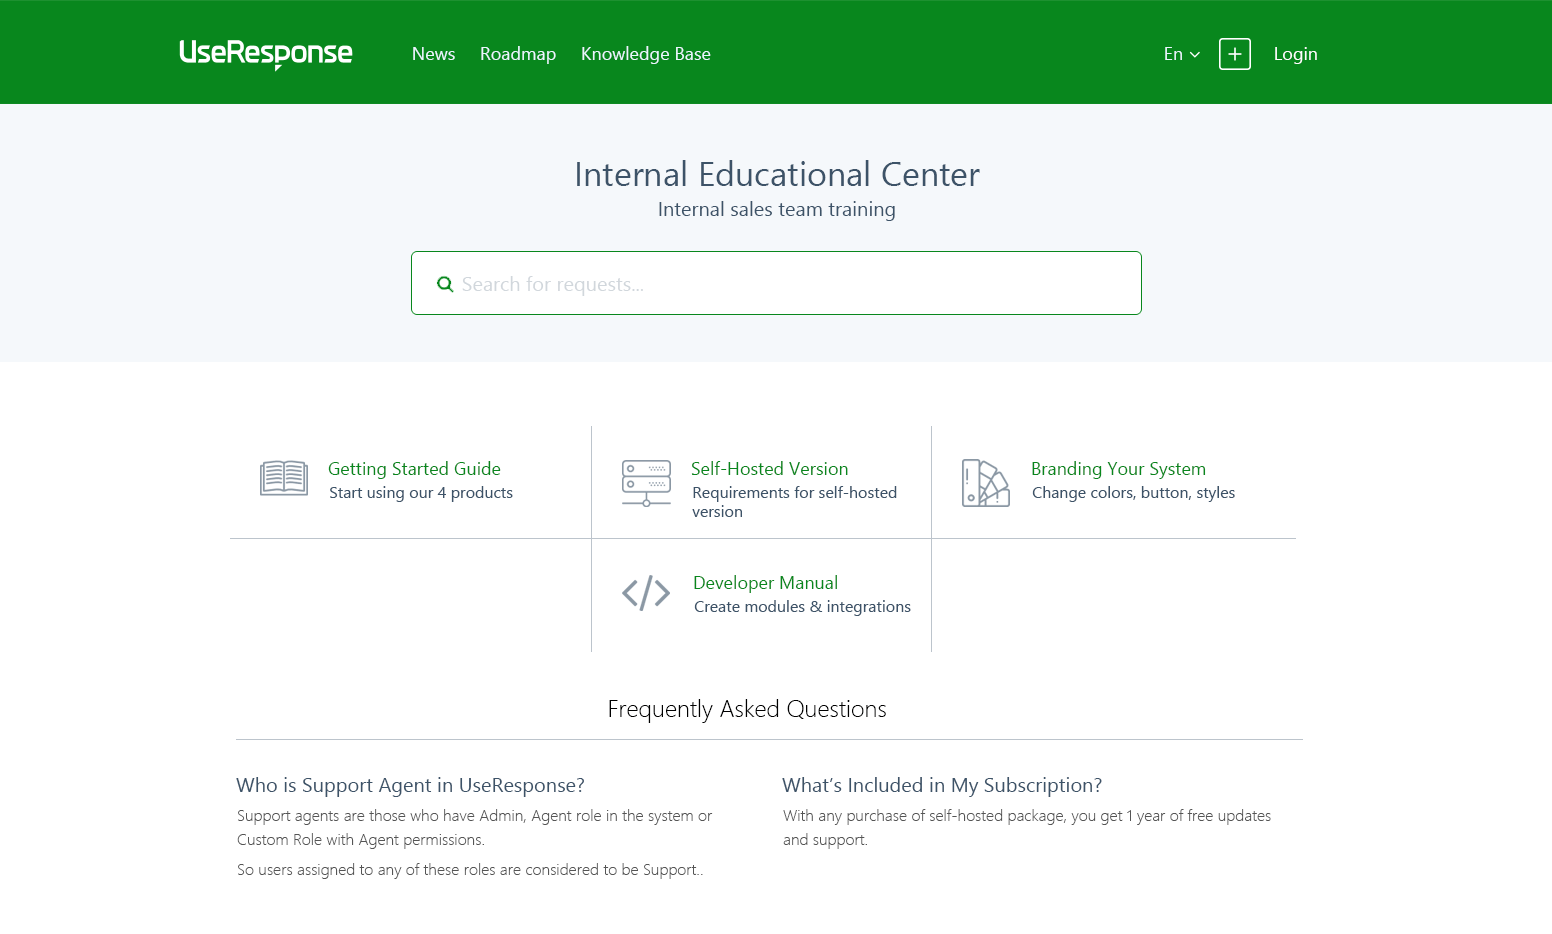 Knowledge Base Portal